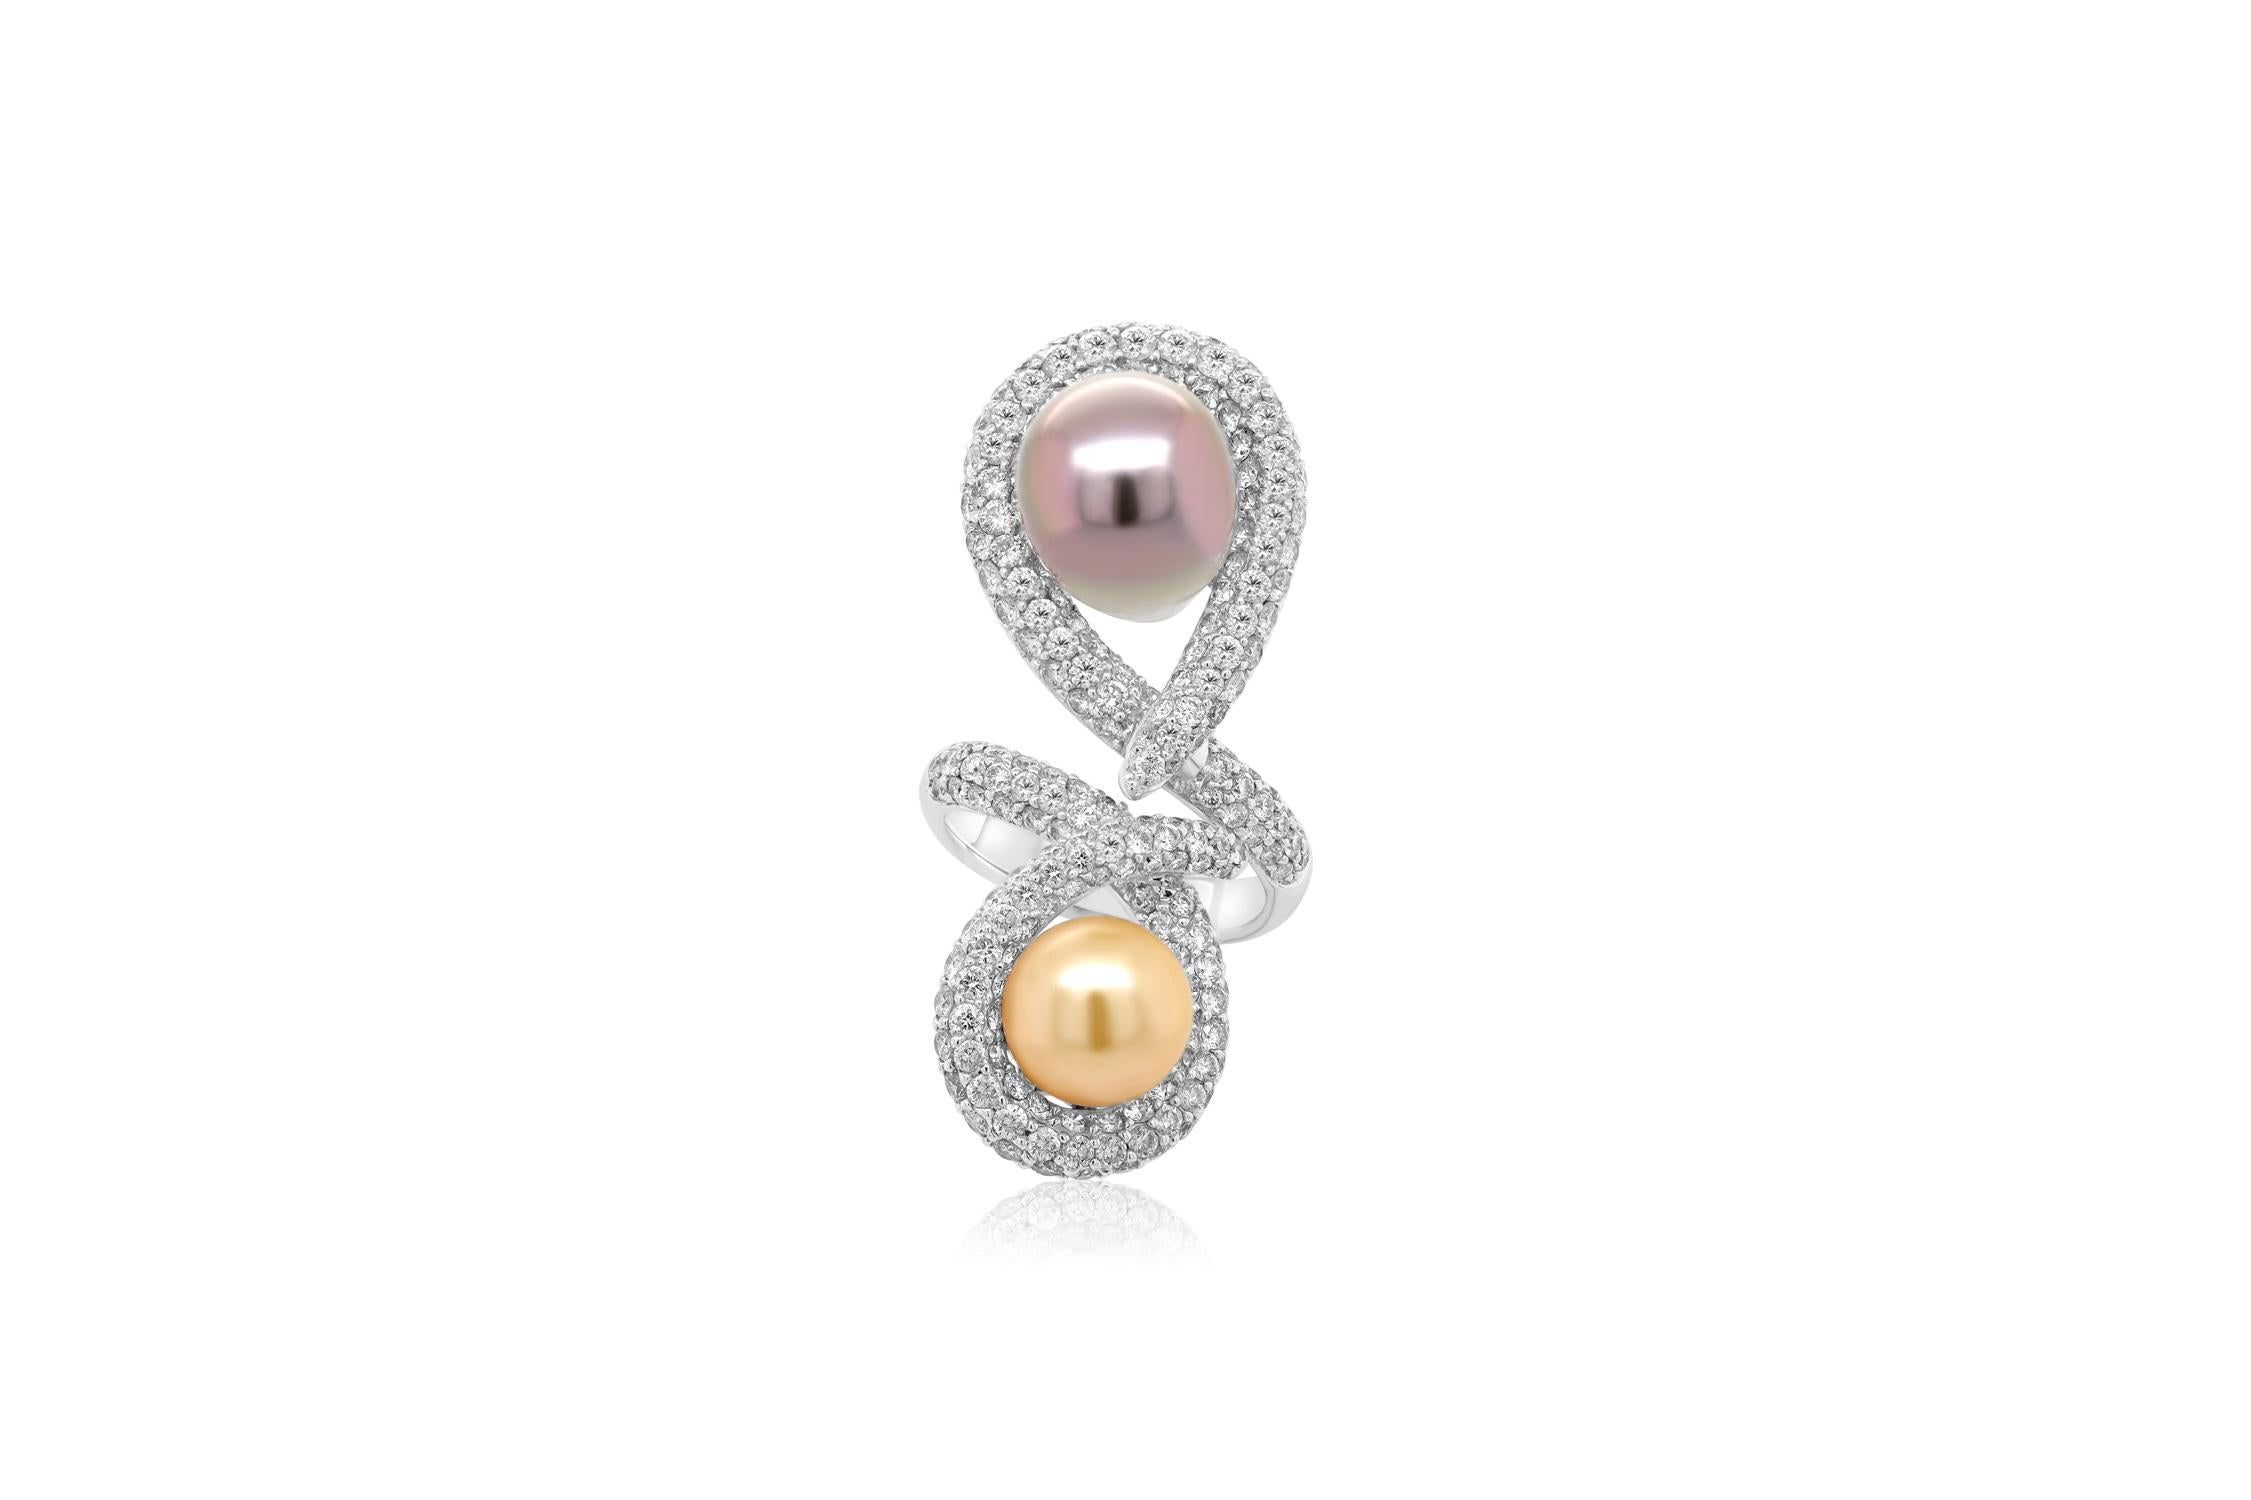 Diamant- und Perlenring aus 18 Kt. Weißgold mit einer gelben und einer schwarzen 11,6-11,9 mm großen Perle an den Enden eines Rings, der mit 4,32 cts tw runden Diamanten besetzt ist.
Diana M. ist seit über 35 Jahren ein führender Anbieter von